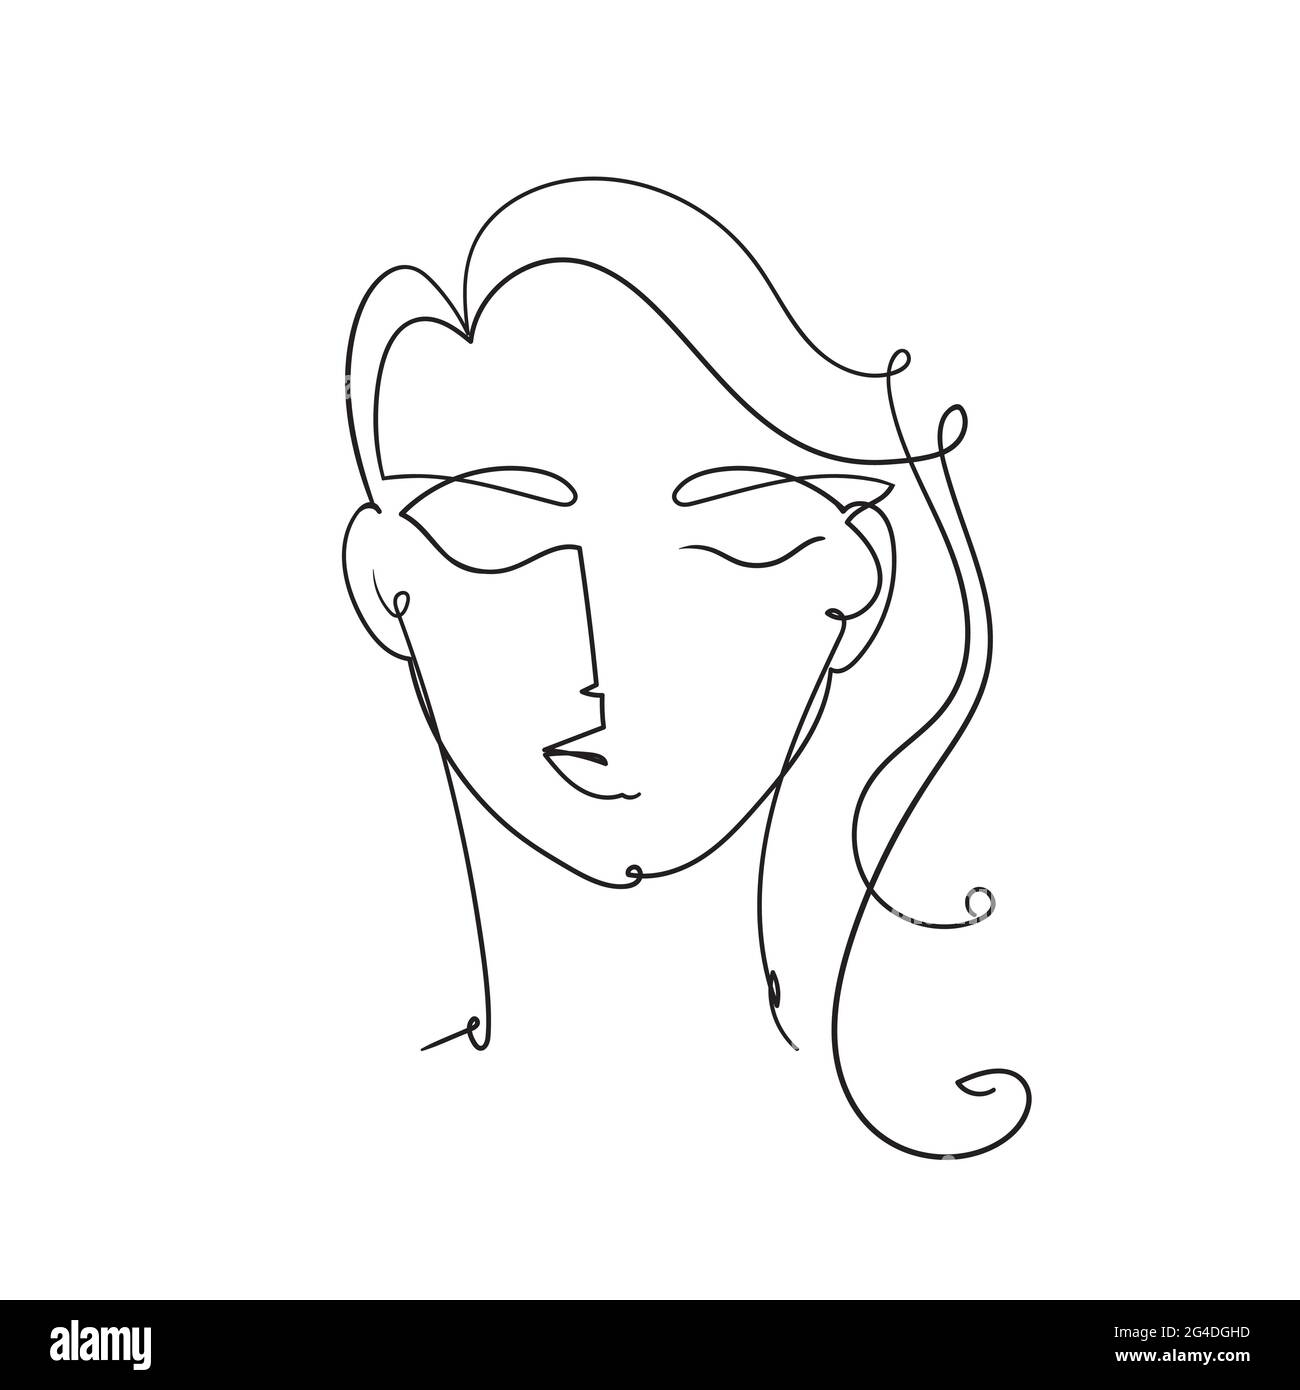 Femme face à un dessin de ligne continue. Résumé Portrait de femme minimal.Illustration vectorielle de stock isolée sur fond blanc. Illustration de Vecteur